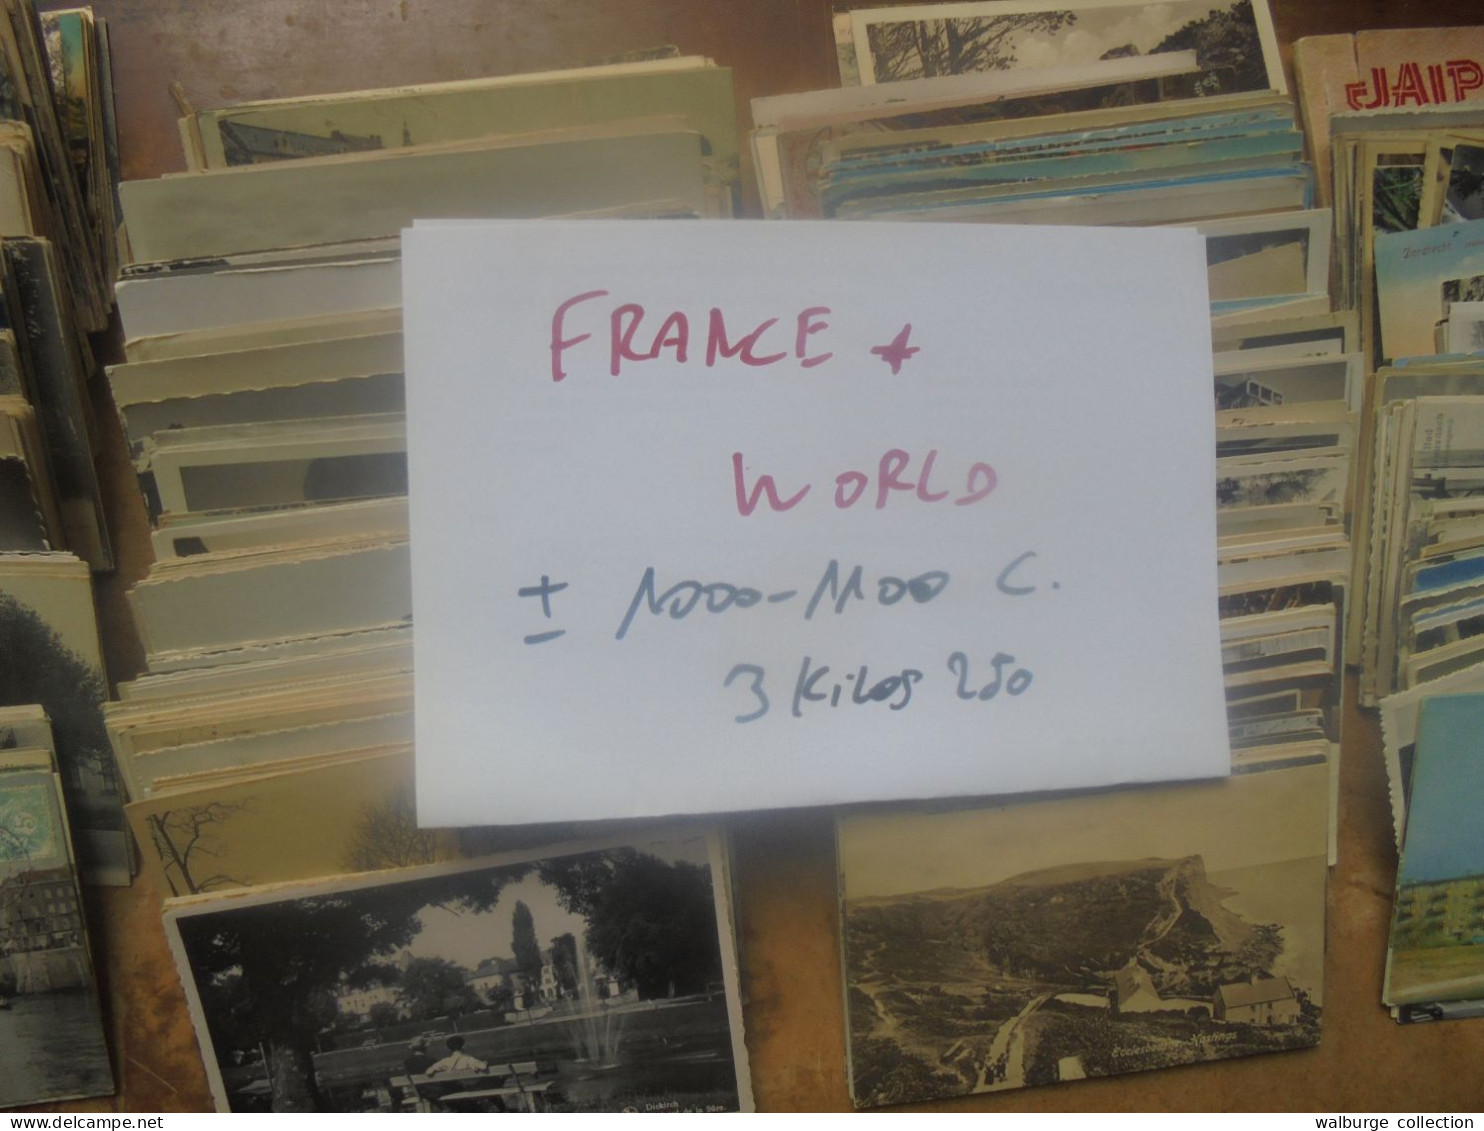 +++FRANCE+WORLD +-1000-1100 CARTES MAJ. ANCIENNES BEAU LOT "DECOUVERTES" 3 KILOS 250+++(Lire Ci-bas) - 500 Postcards Min.